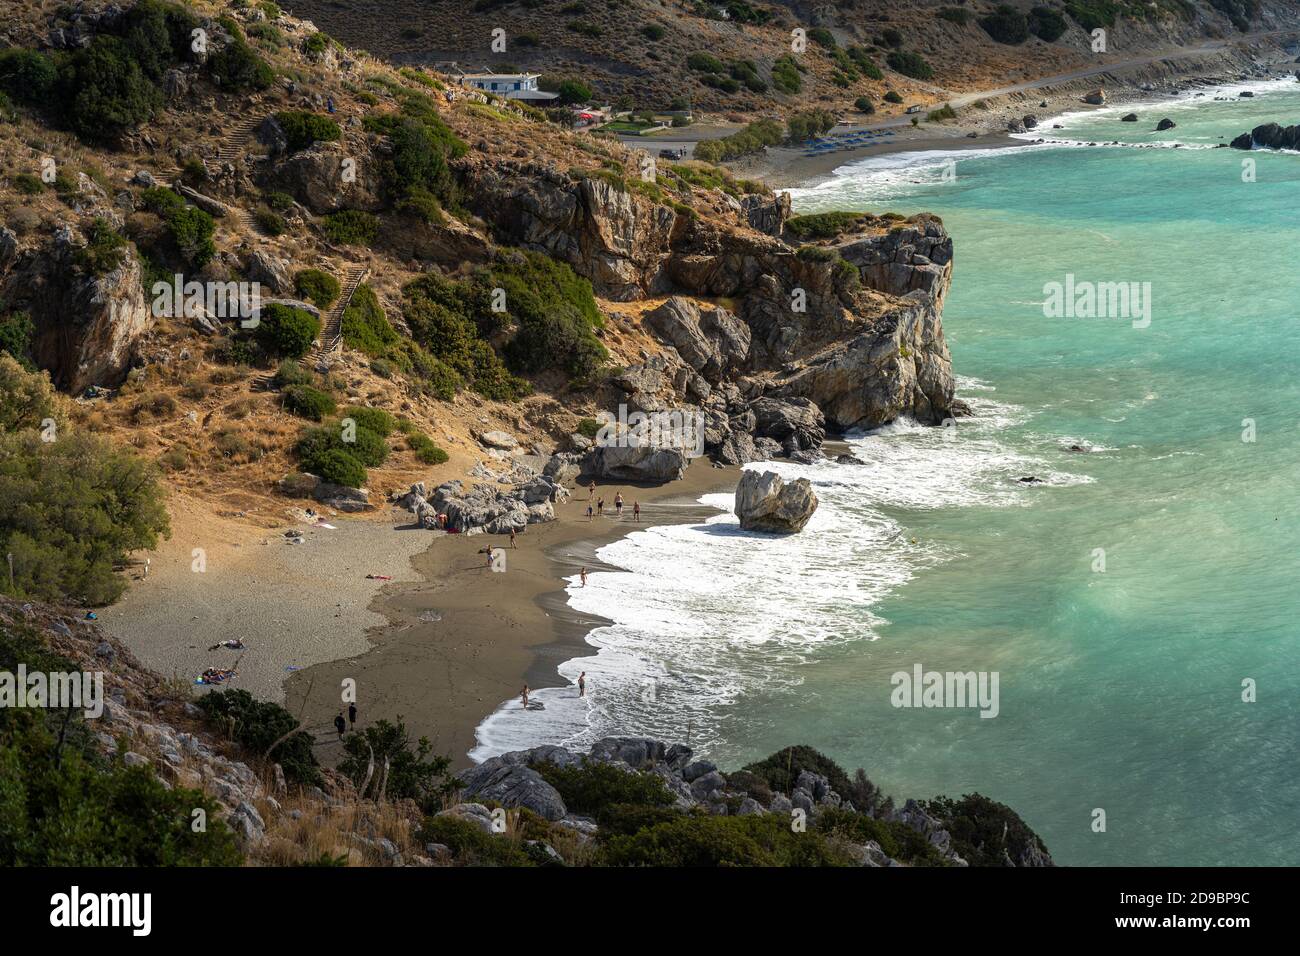 Der Palmenstruand von Preveli, Kreta, Griechenland, Europa | Preveli Palm beach, Creta, Grecia, Europa Foto de stock